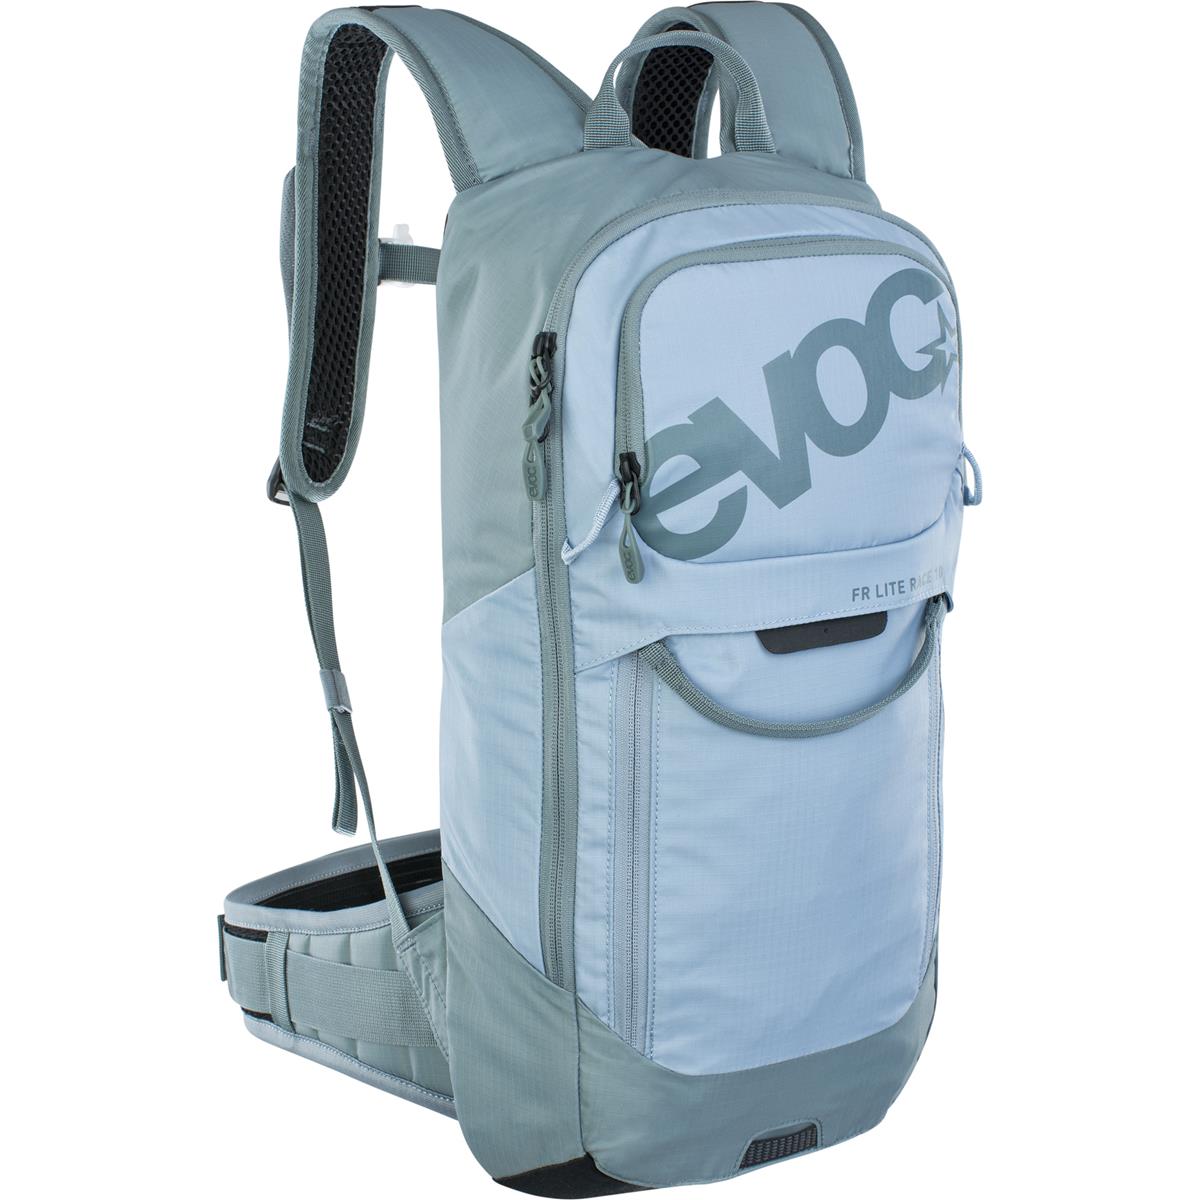 Evoc Protector Backpack FR Lite Race 10 10L - Steel/Copen Blue